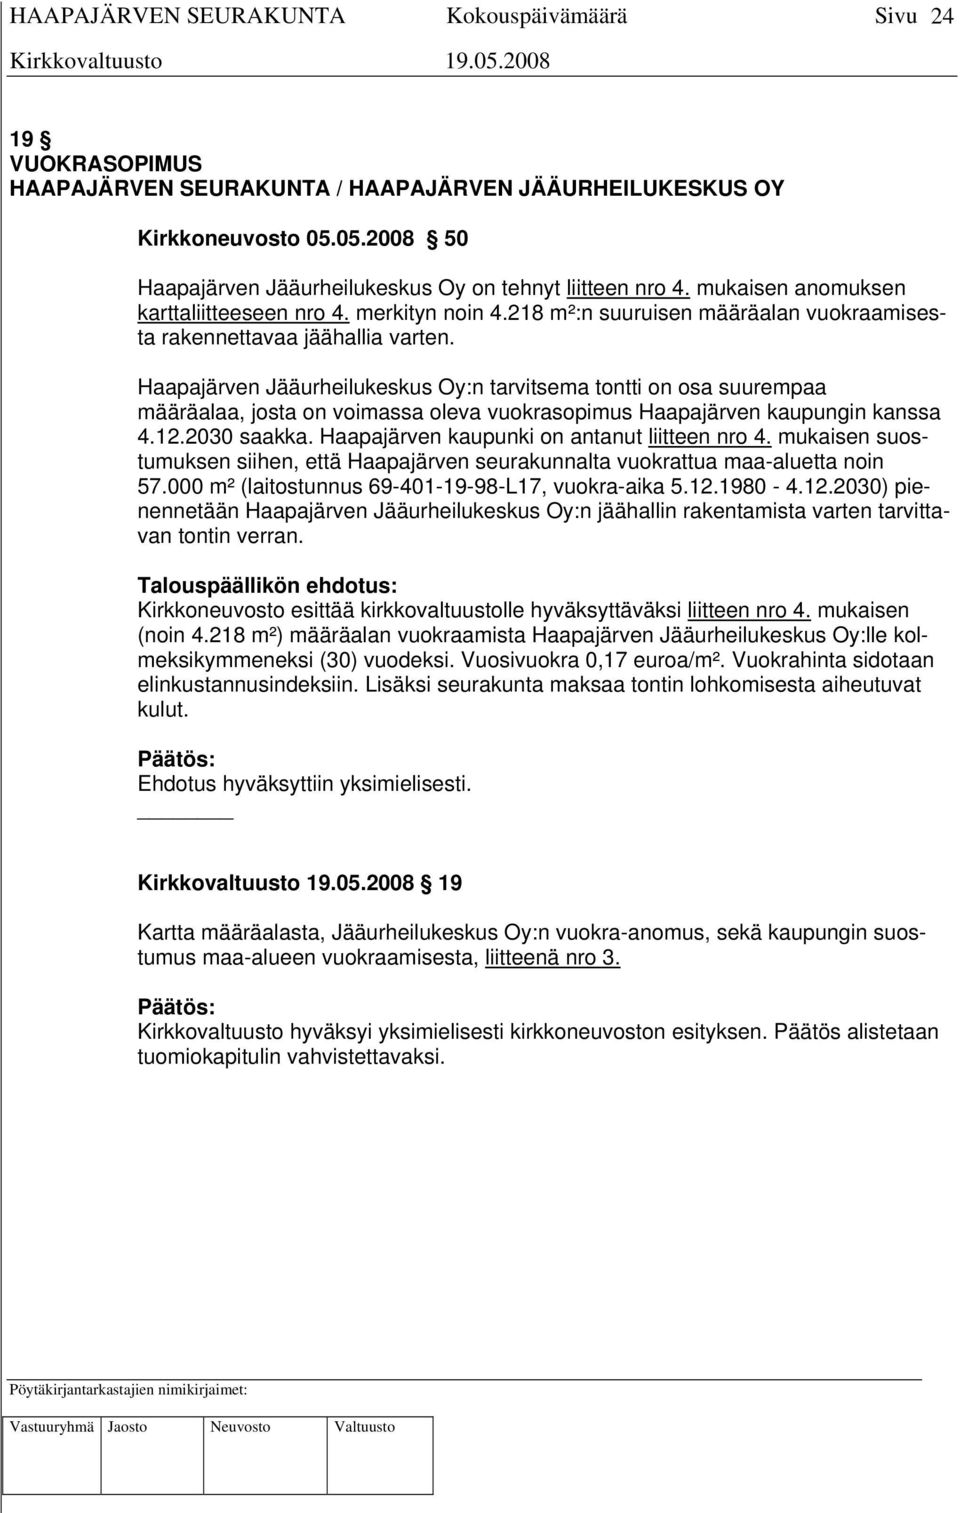 Haapajärven Jääurheilukeskus Oy:n tarvitsema tontti on osa suurempaa määräalaa, josta on voimassa oleva vuokrasopimus Haapajärven kaupungin kanssa 4.12.2030 saakka.